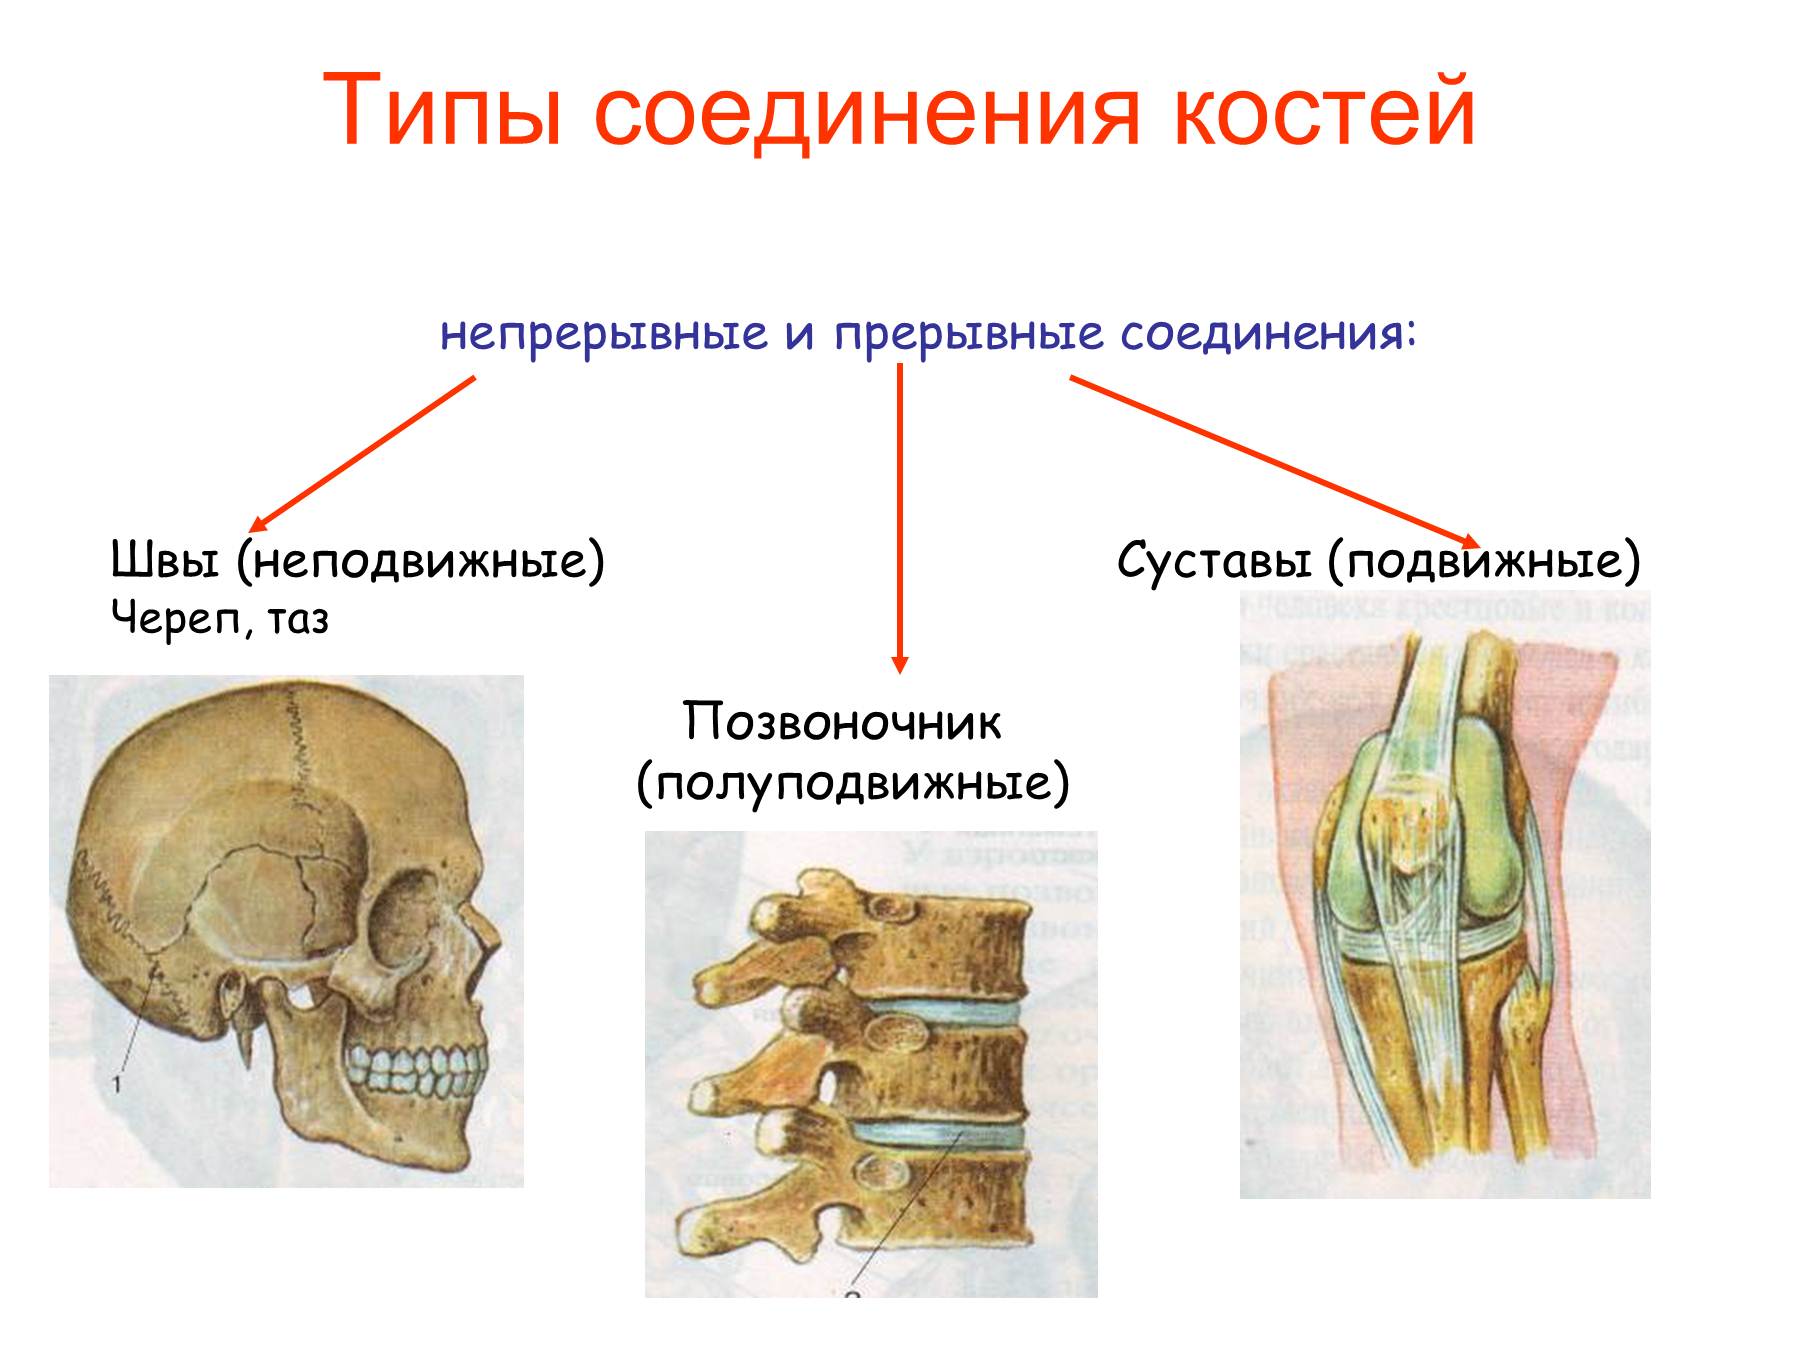 Сустав 2 соединение костей. Соединение костей человека непрерывные прерывные. Подвижное полуподвижное и неподвижное соединение костей. Соединения костей непрерывные прерывные симфизы. Неподвижные полуподвижные и подвижные соединения костей.